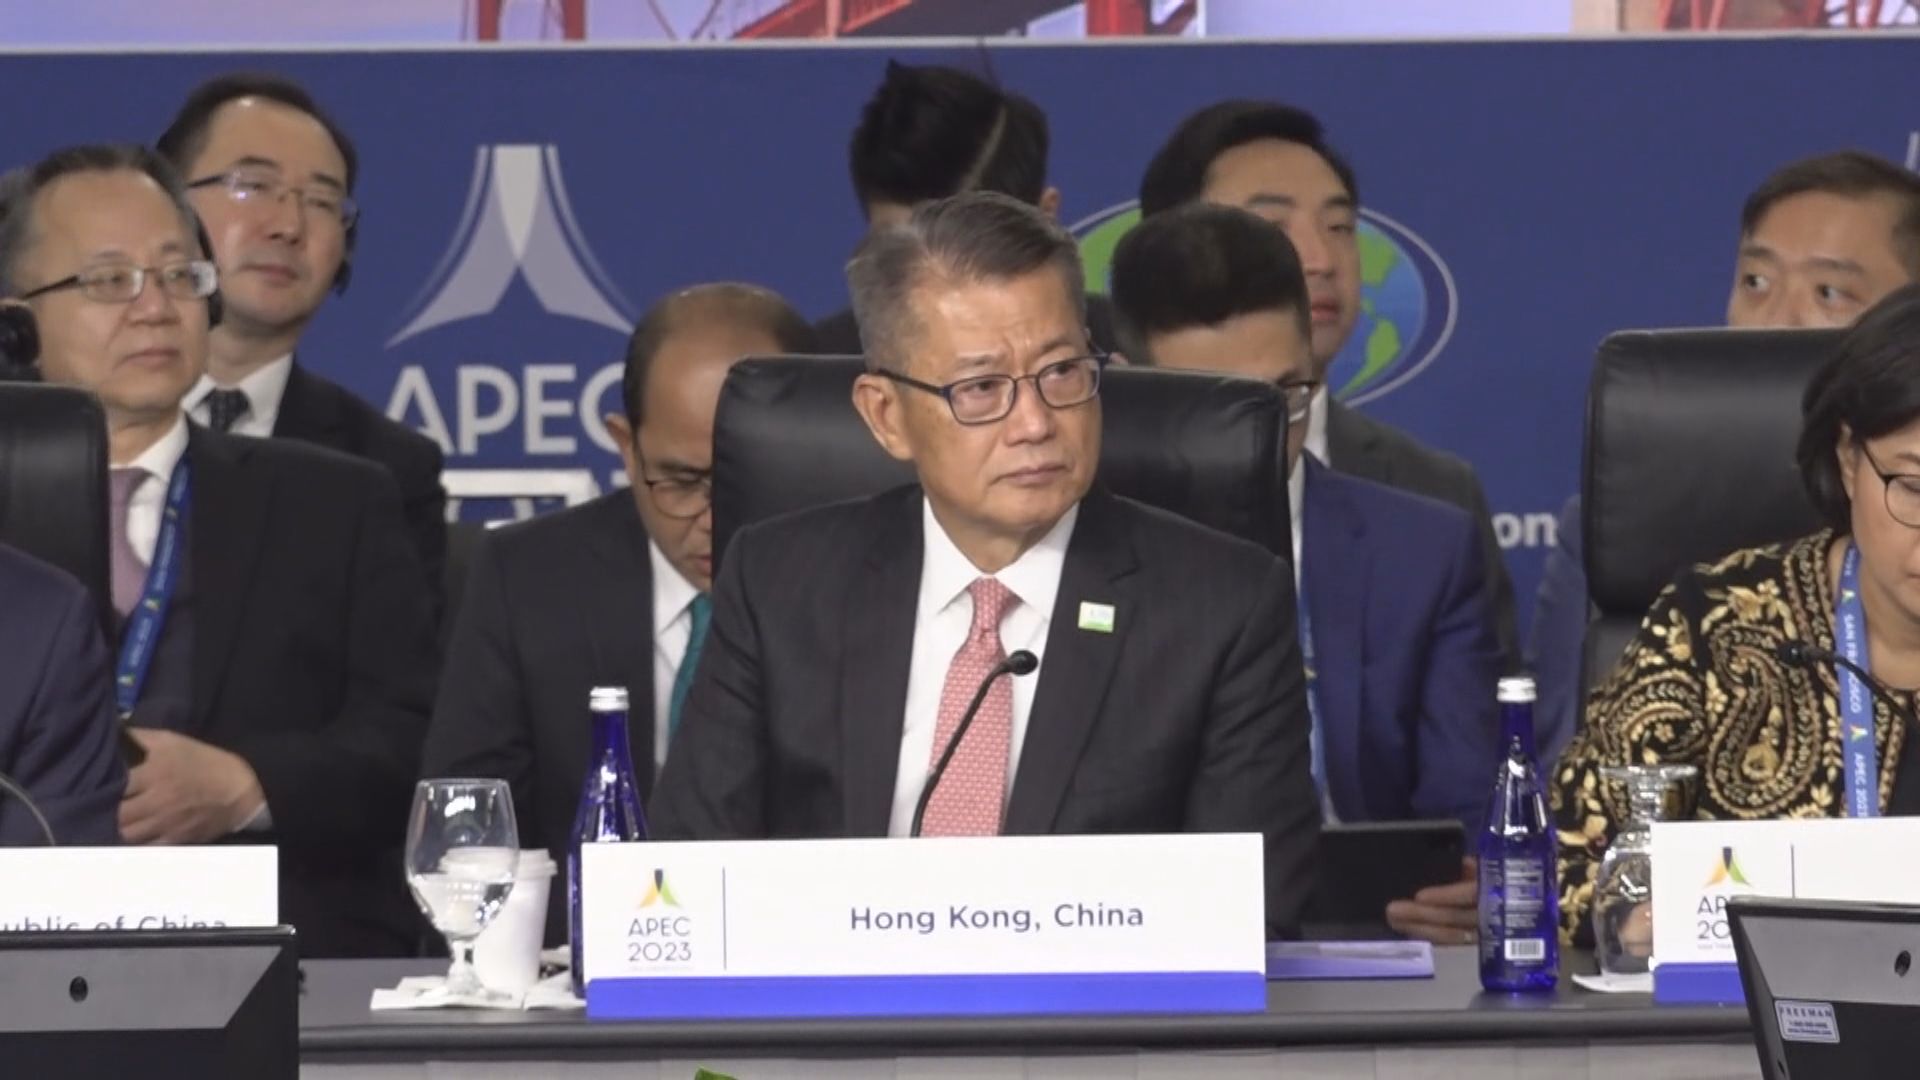 陳茂波在三藩市出席APEC財長會議 簡介香港最新經濟情況